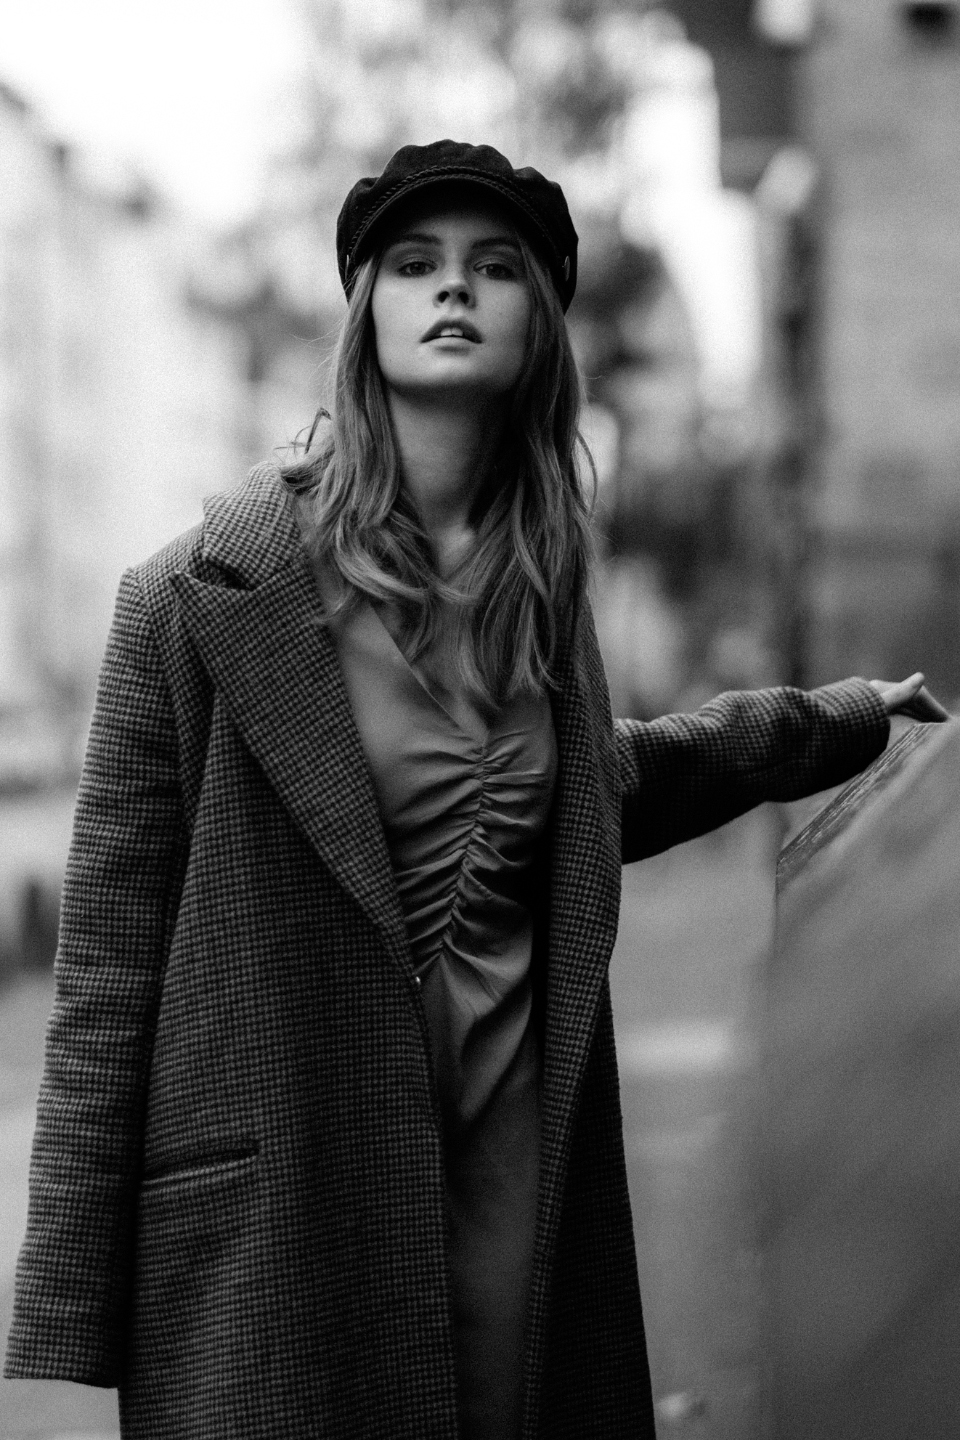 Schwarz-Weiß Portait einer Frau mit langen blonden Haaren, schwarzem Hut und kariertem Mantel, die durch die Straßen schlendert und dabei in die Kamera schaut